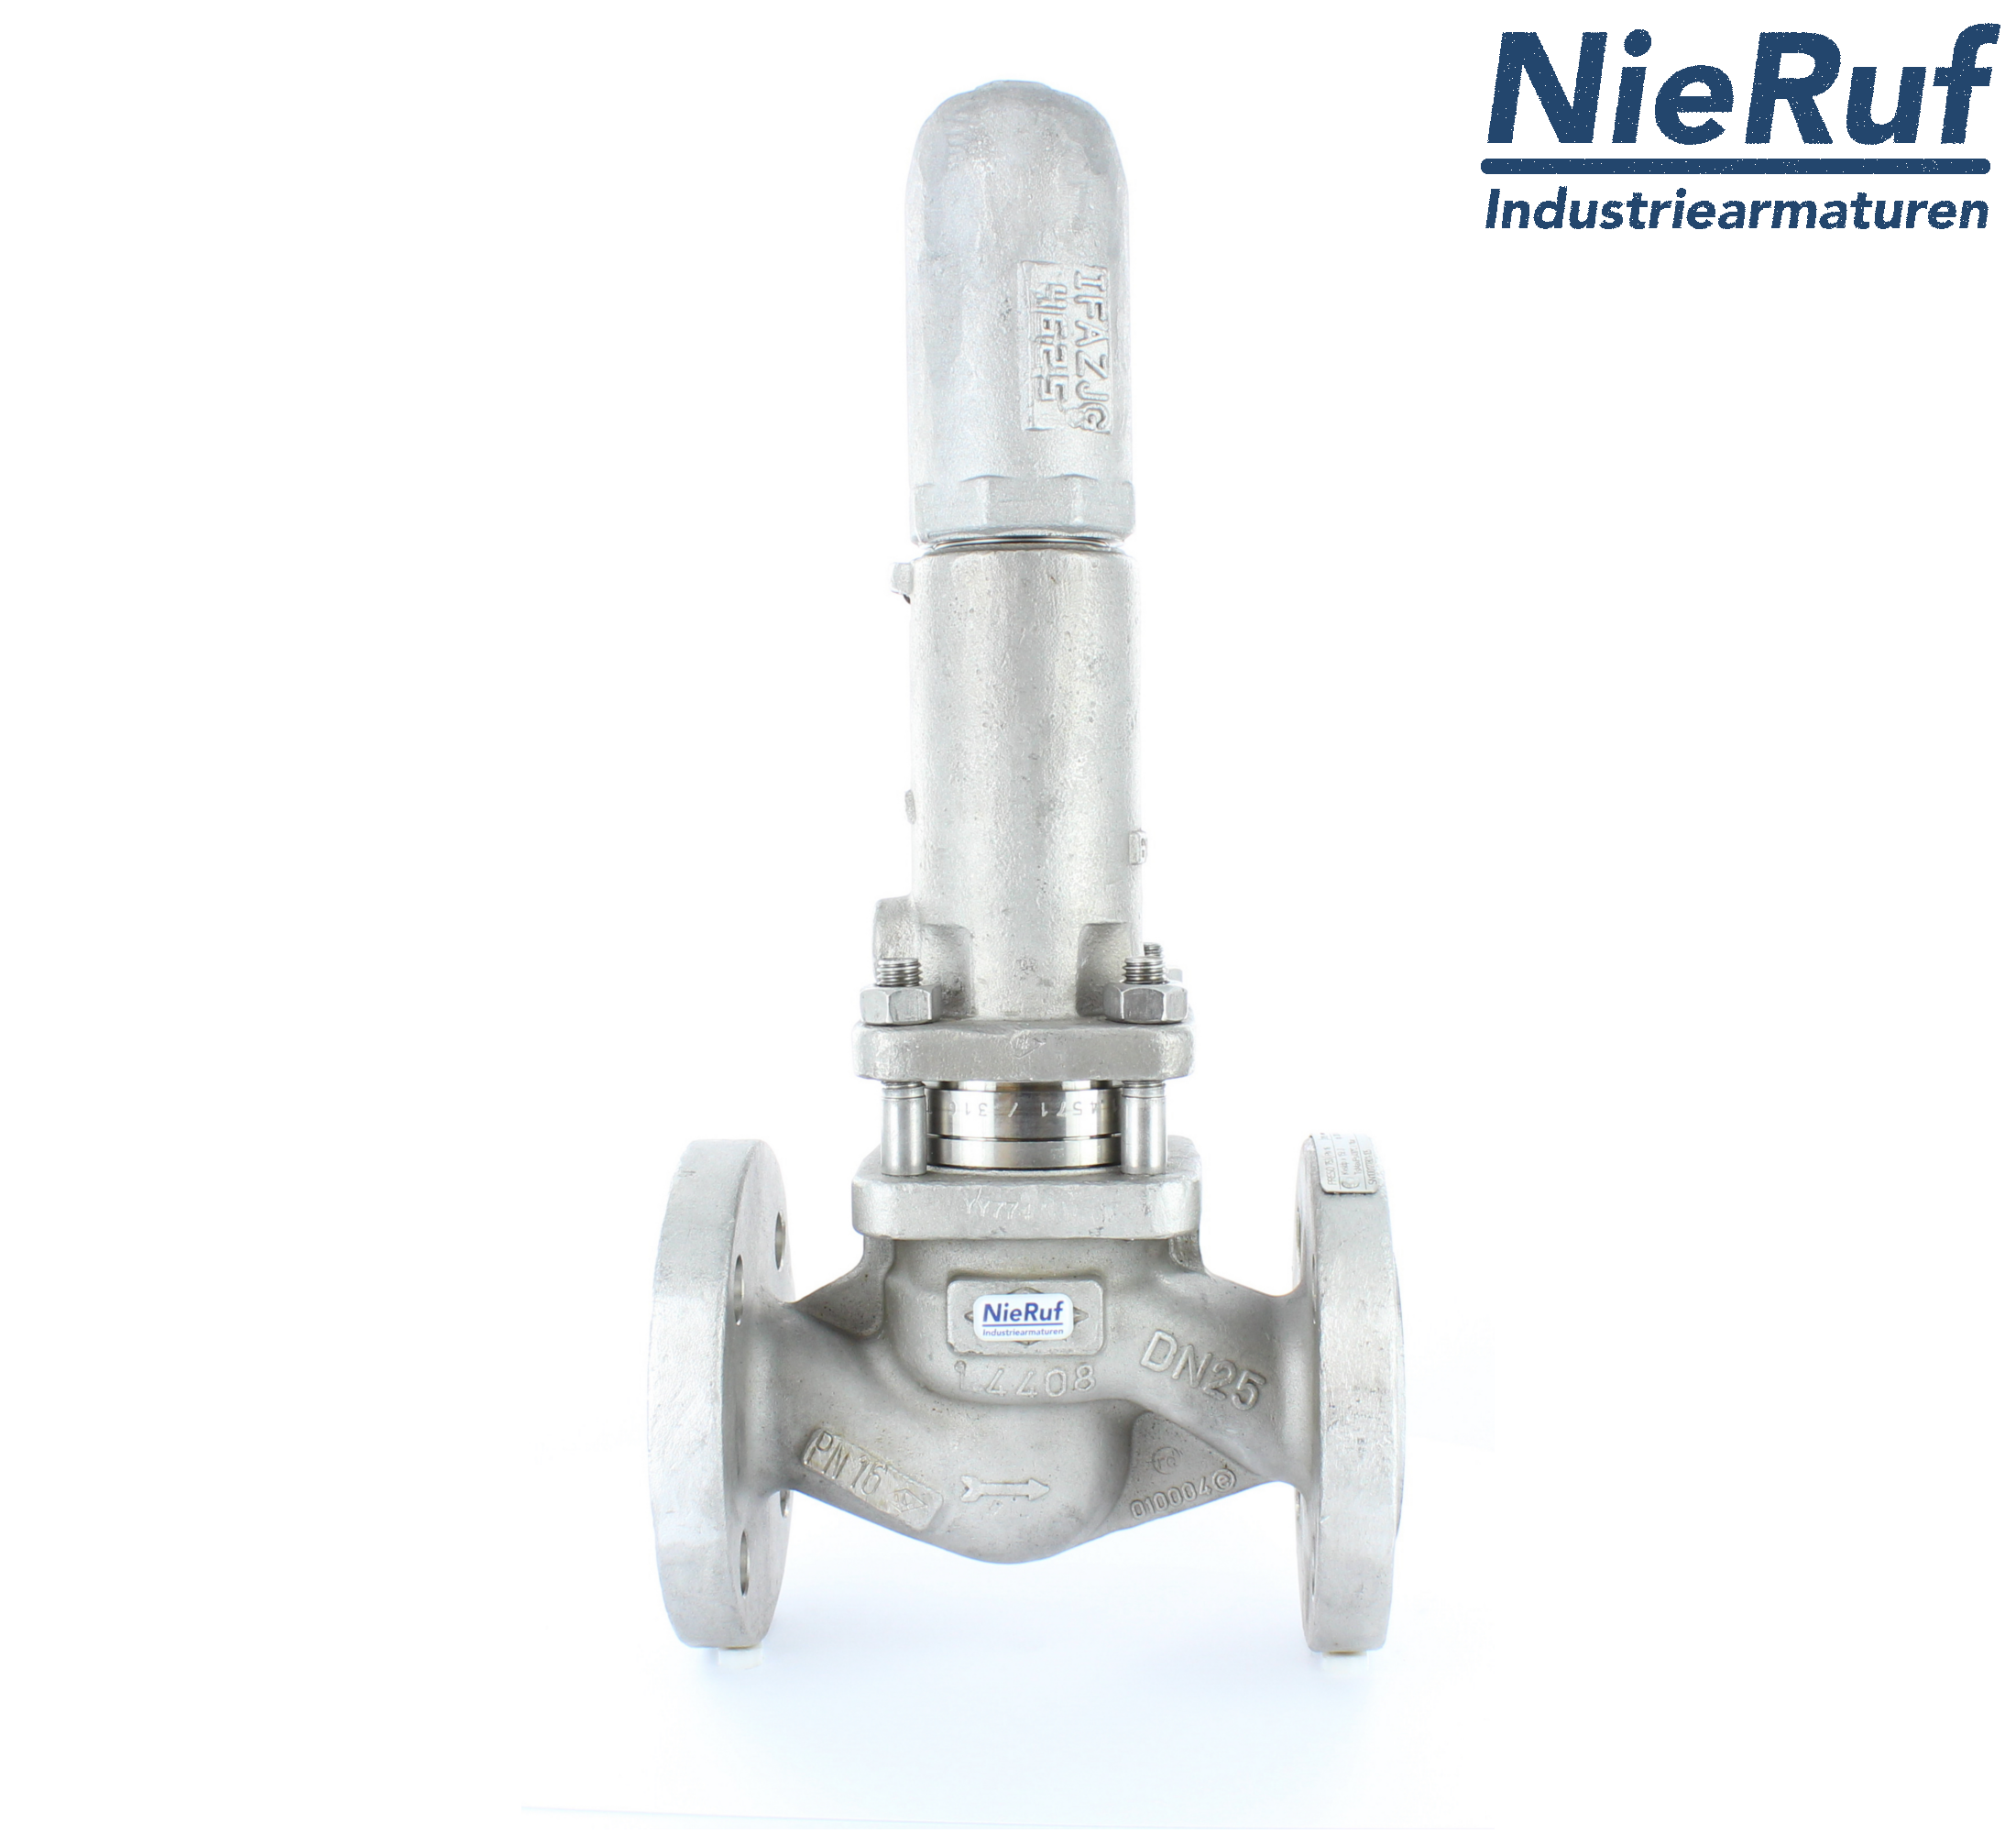 piston overflow valve DN 100 UV13 cast iron 1.0619+N 0,5 - 1,5 bar